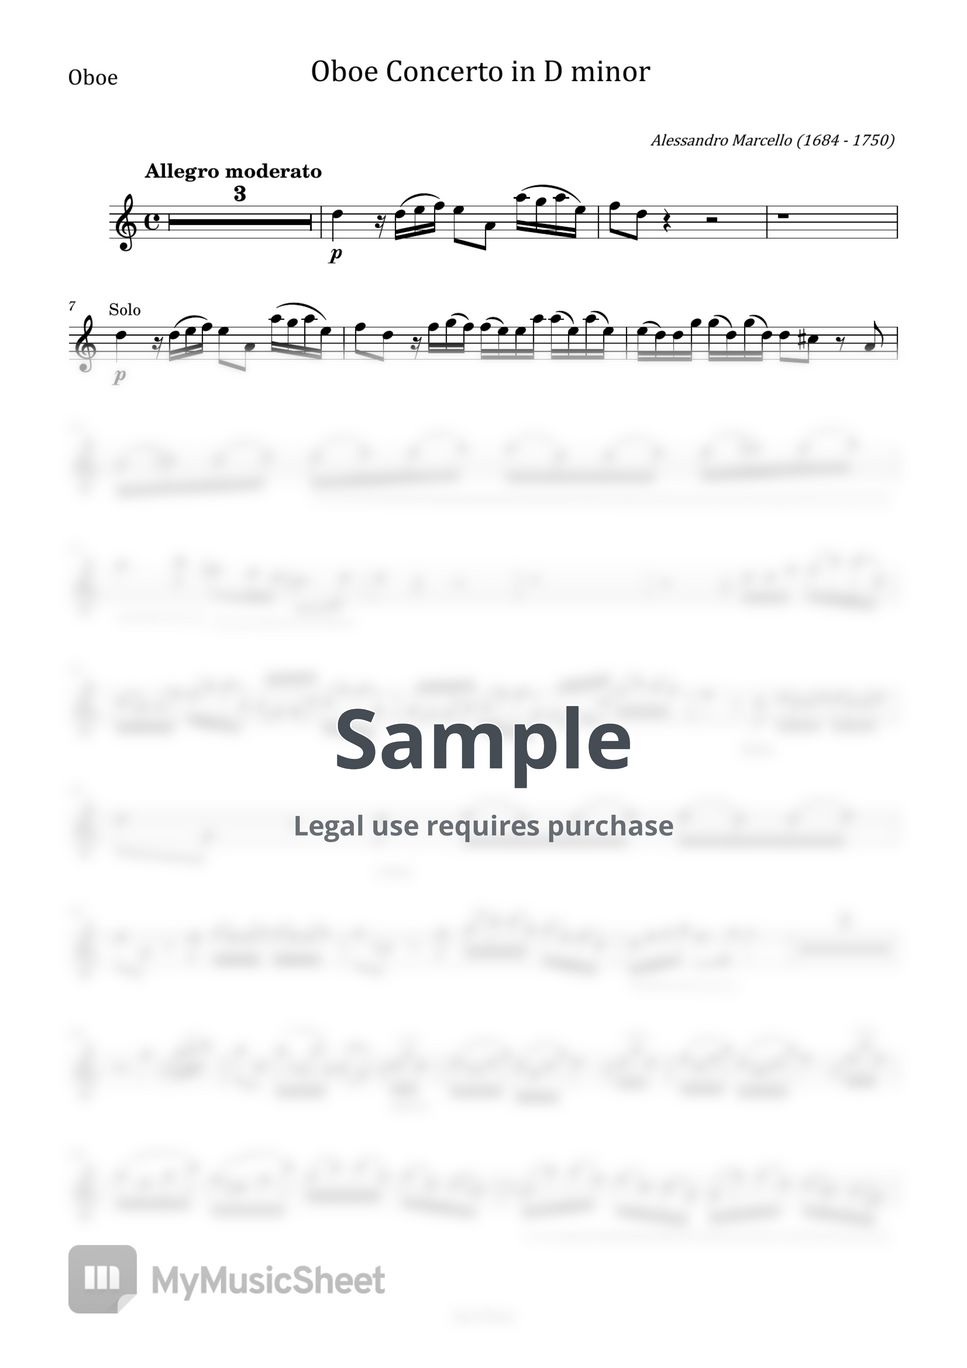 Bach/Marcello - Concerto in D minor Adagio BWV 974 (Bach/Marcello, For Obeo Solo Original S.Z799) by poon